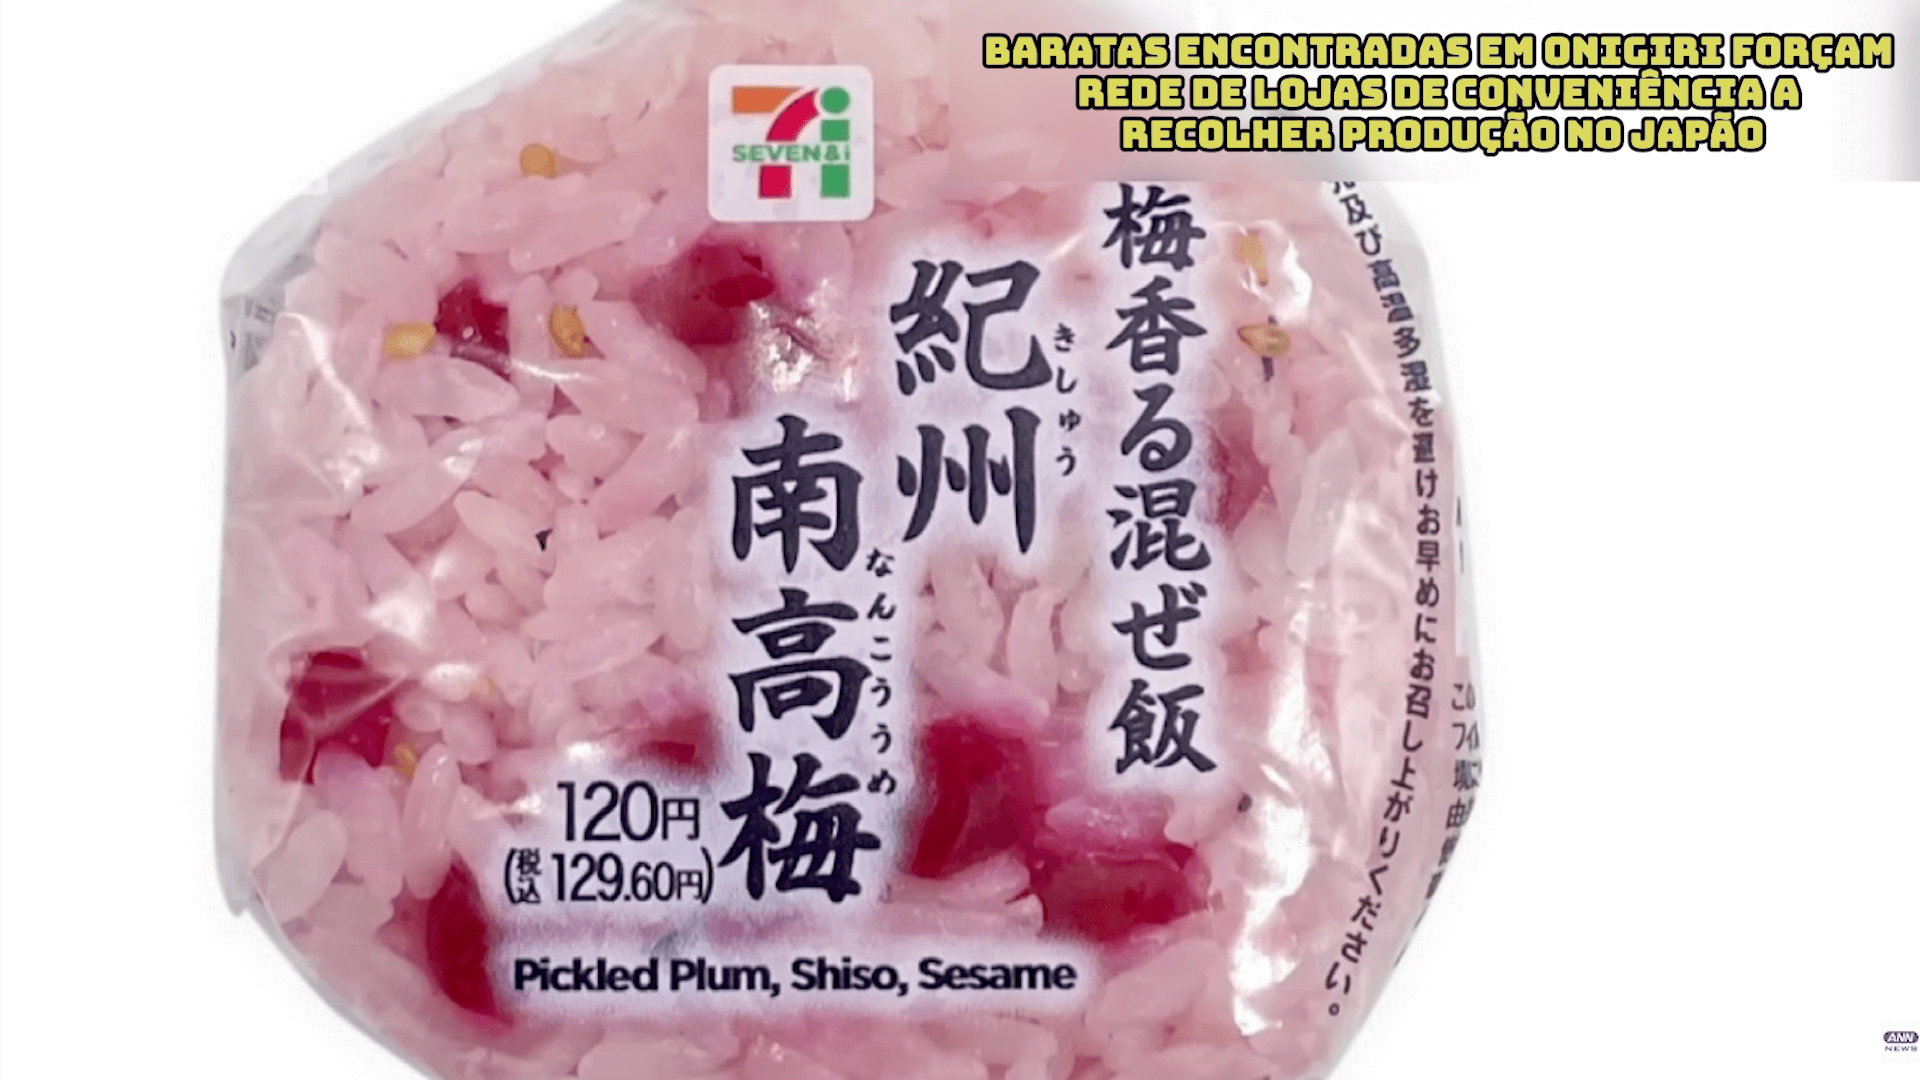 Baratas encontradas em onigiri forçam rede de lojas de conveniência a recolher produção no Japão